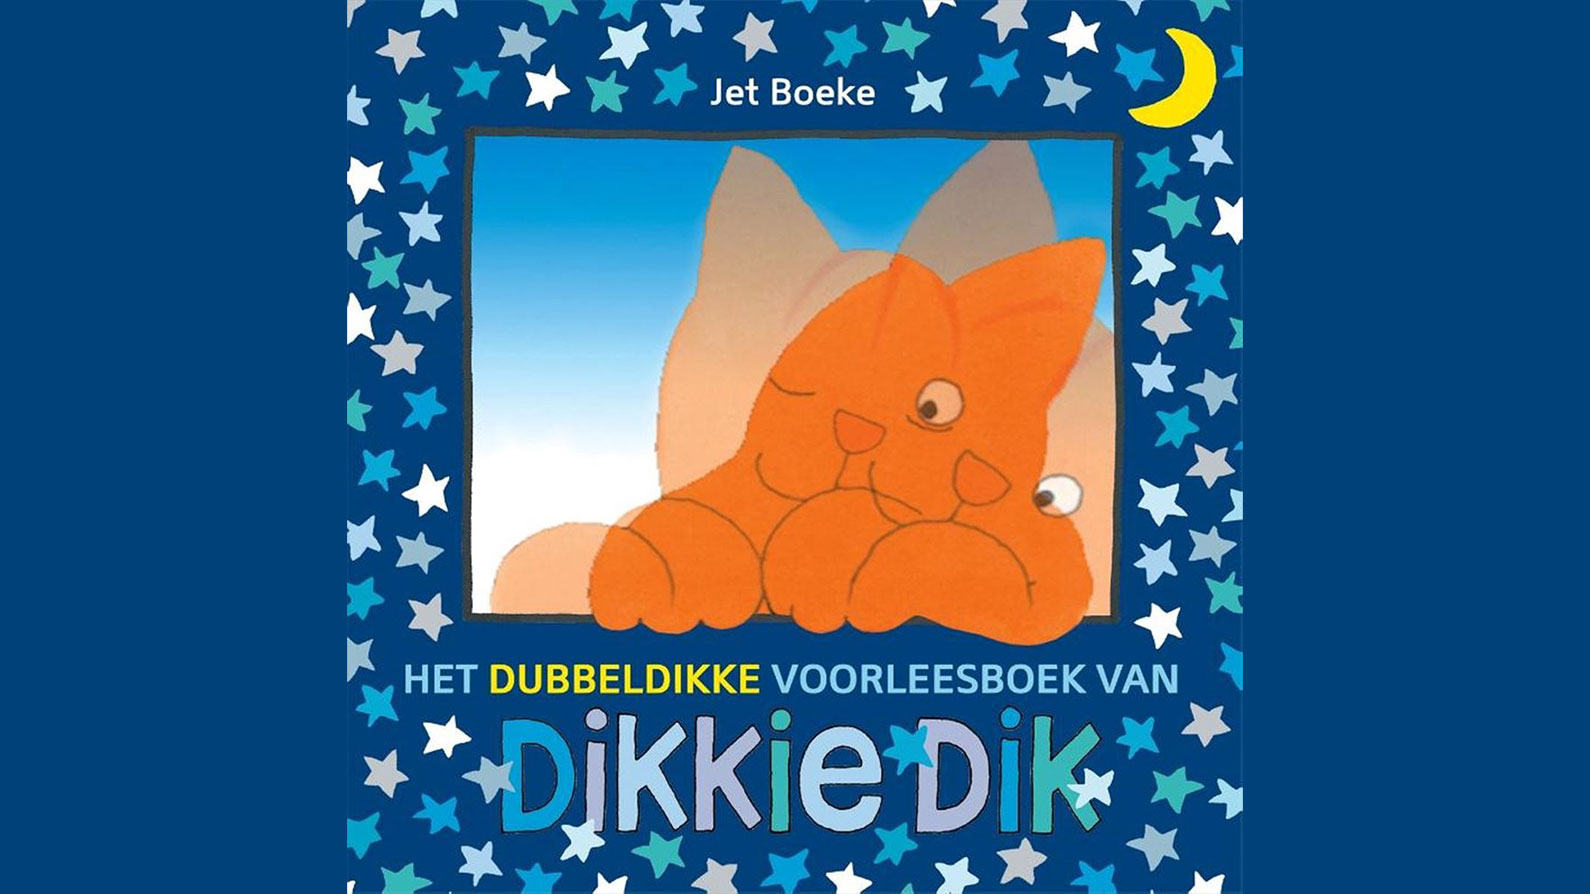 Dubbeldikke voorleesboek van Dikkie Dik van Jet Boeke kaft blauw sterren maan poes oranje illustratie